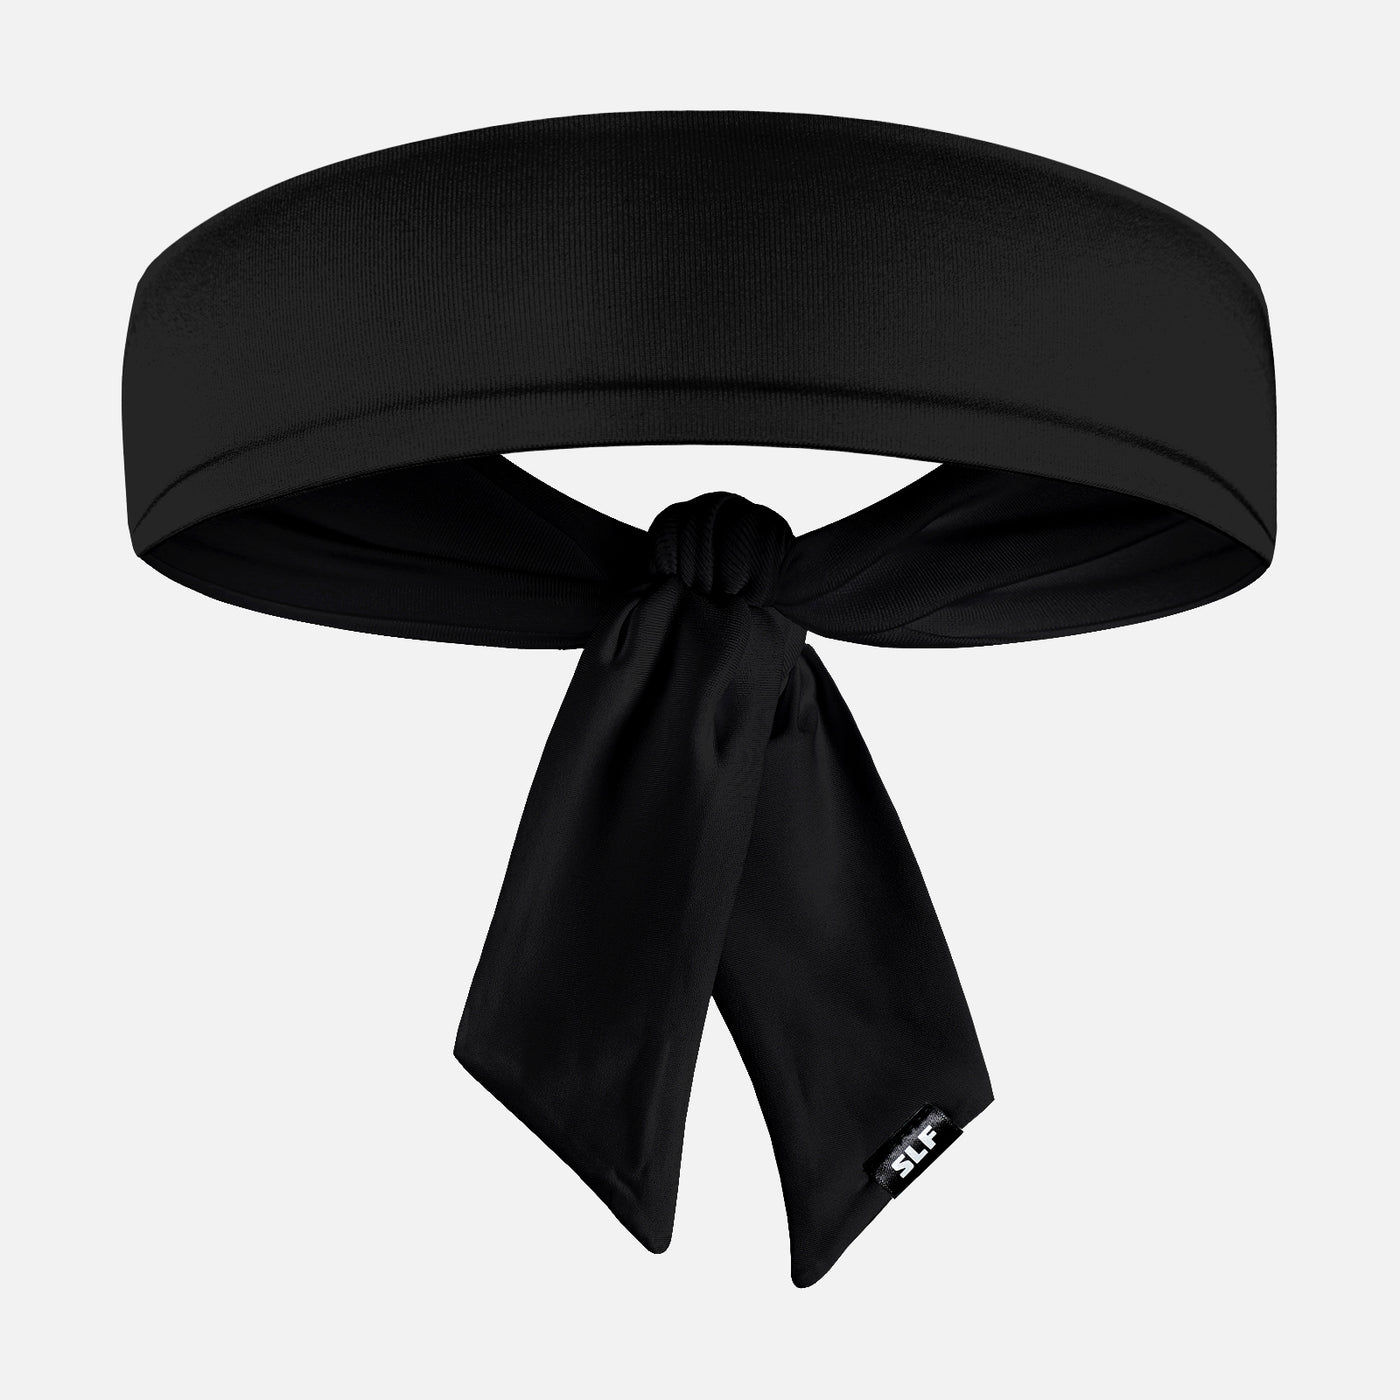 Basic Black Ninja Headband